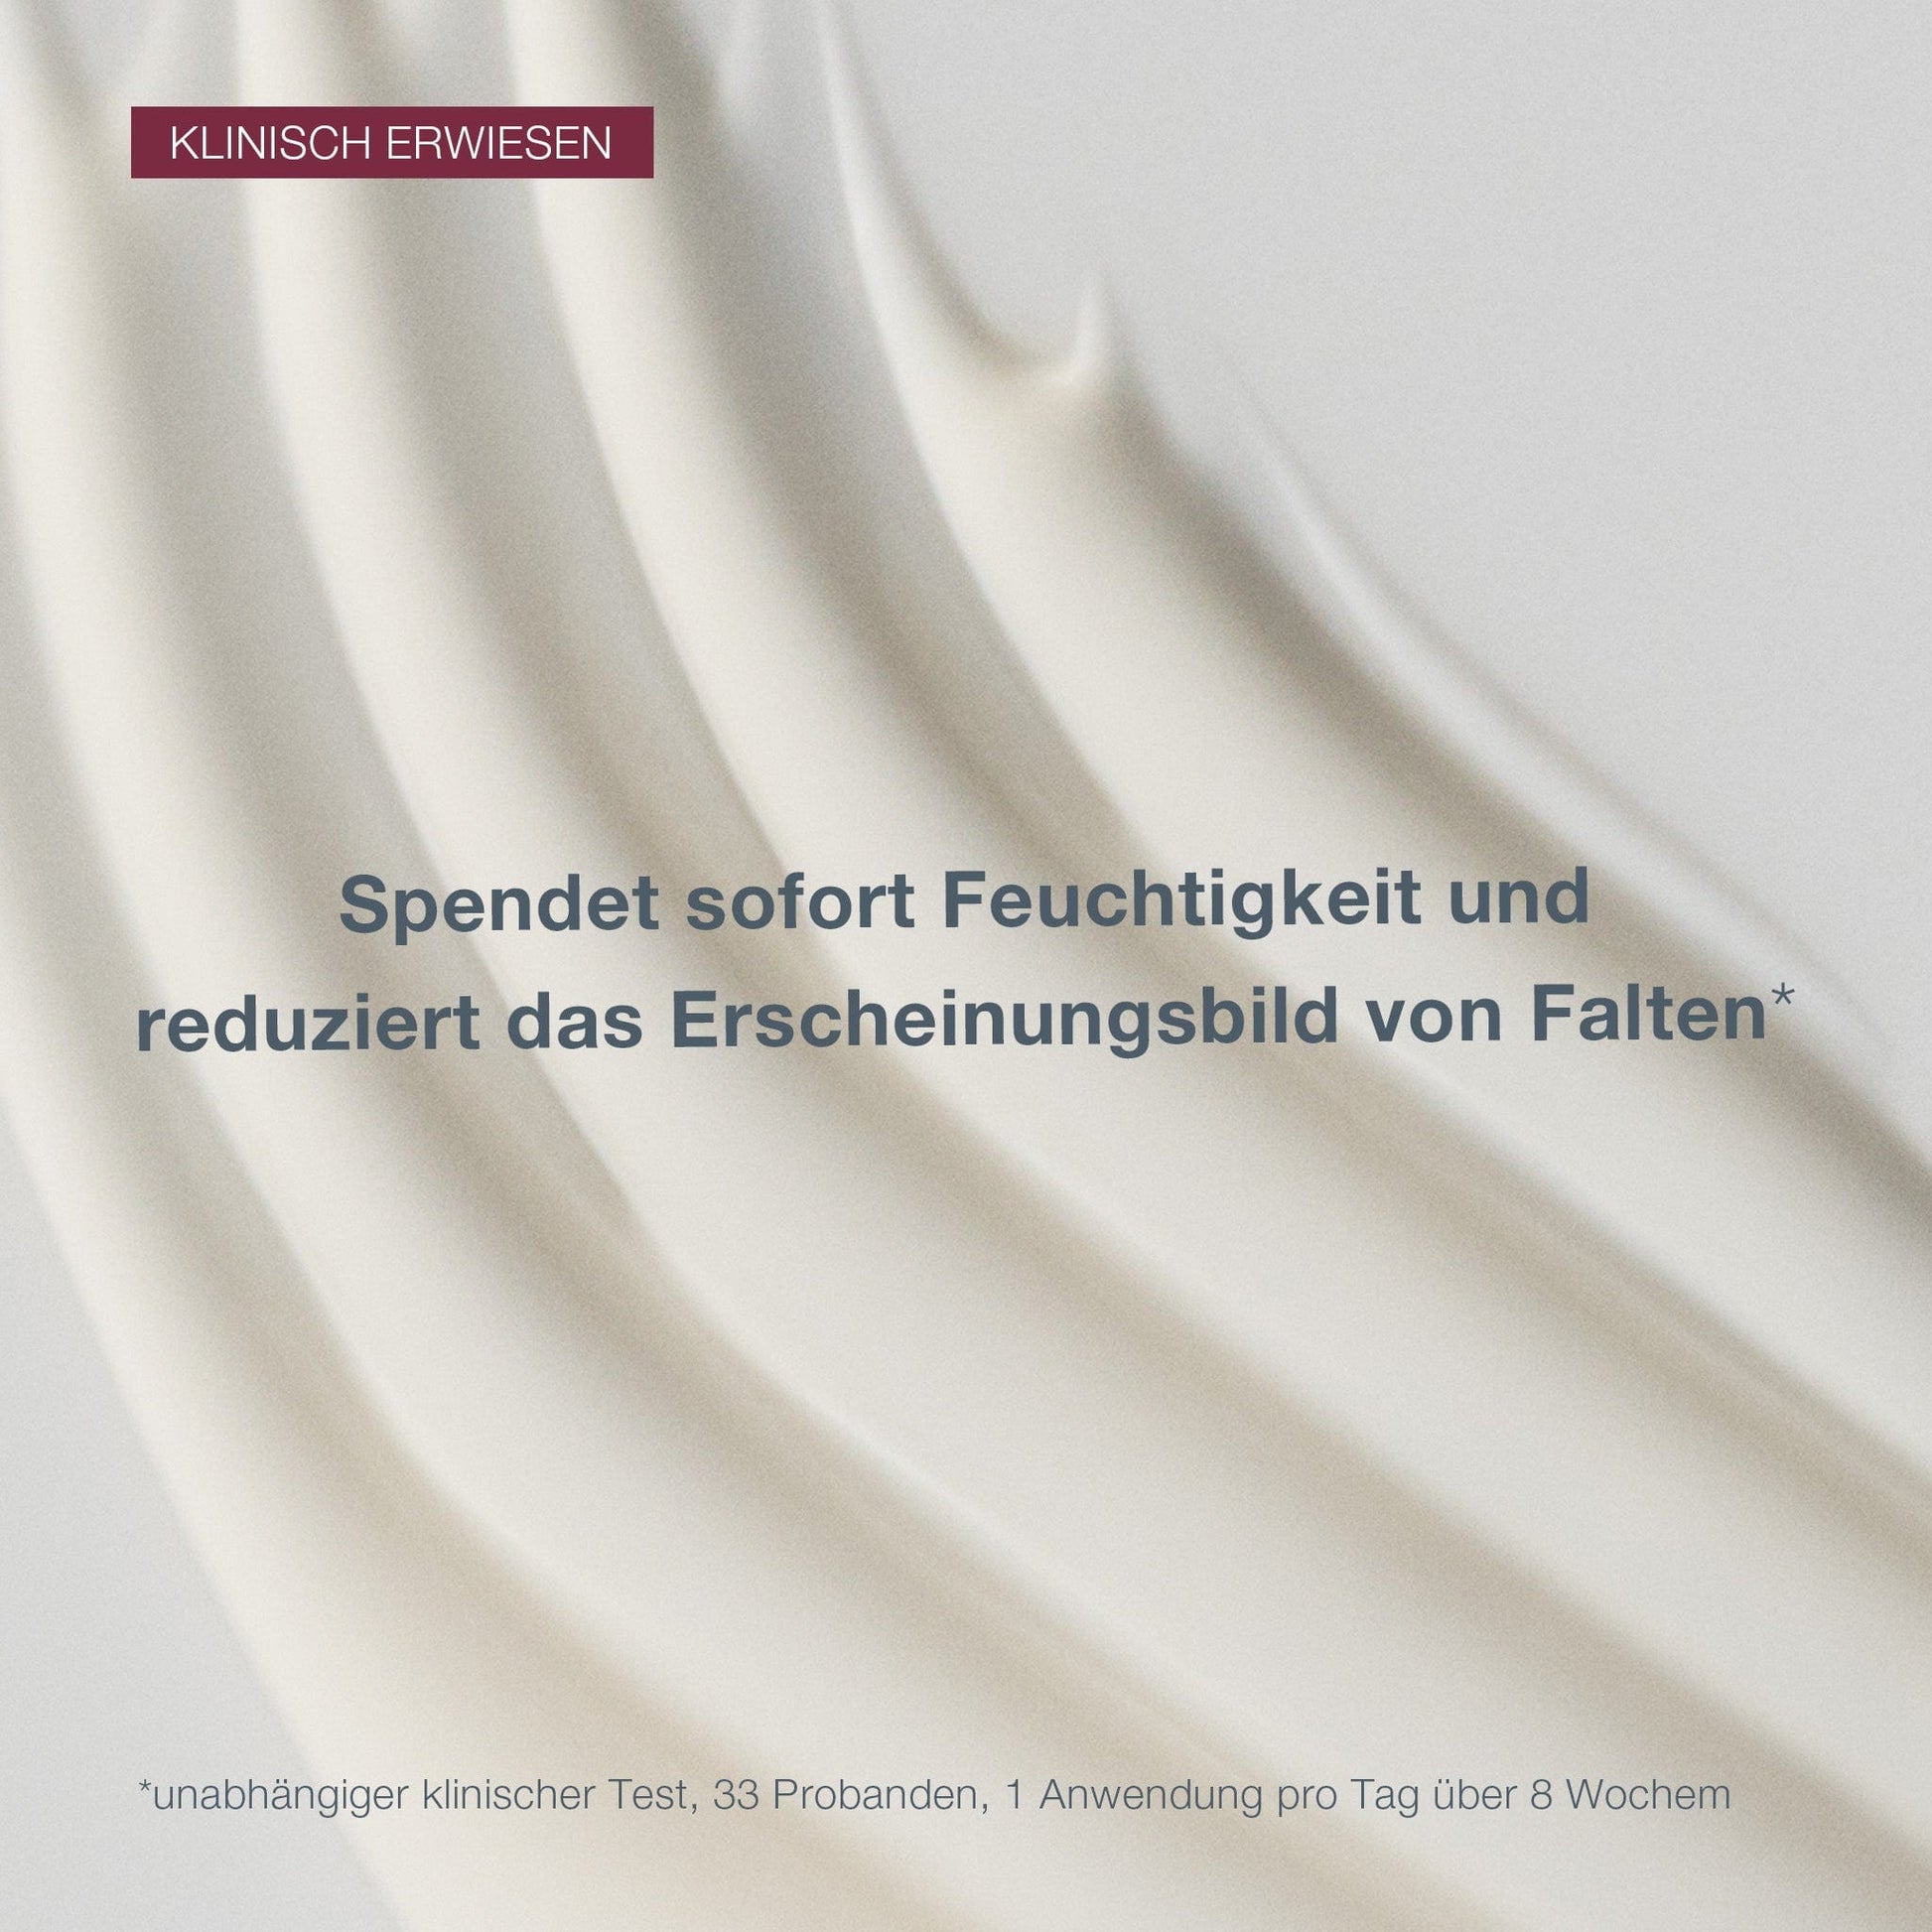 Nahaufnahme einer glatten, weißen Dynamic Skin Recovery SPF50-Creme mit einem Text auf Deutsch, der ihre klinisch nachgewiesene feuchtigkeitsspendende und faltenreduzierende Wirkung anpreist.